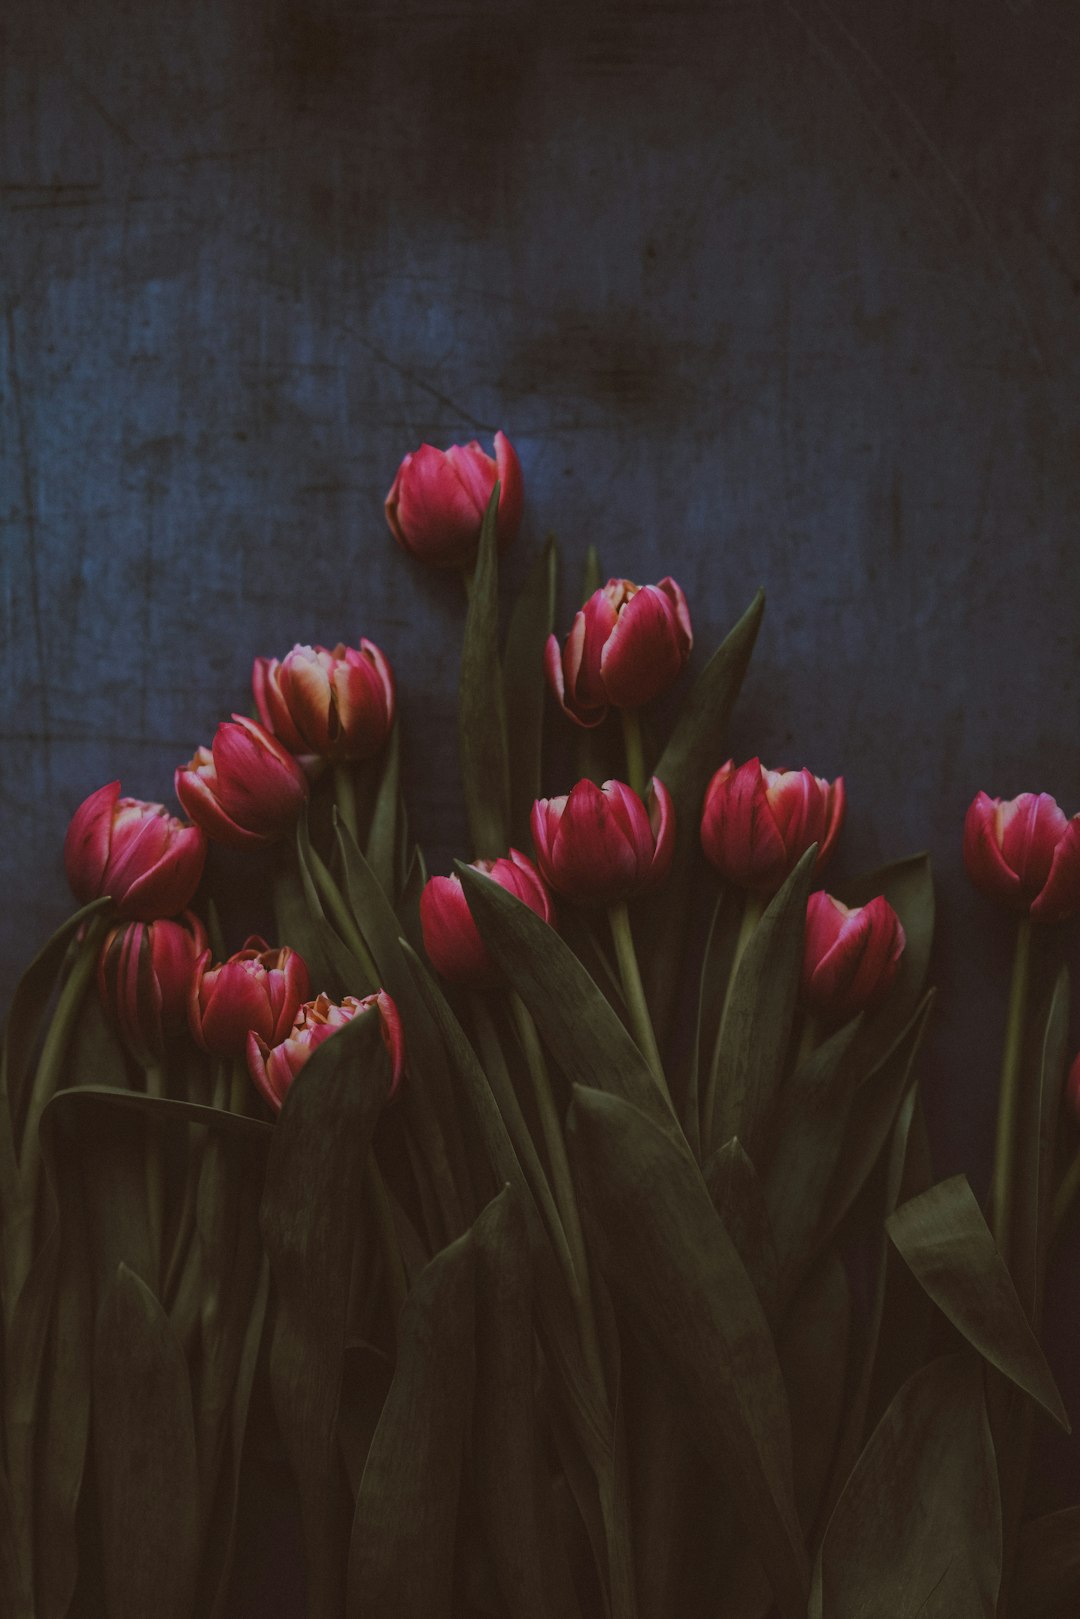 Tulips on dark background